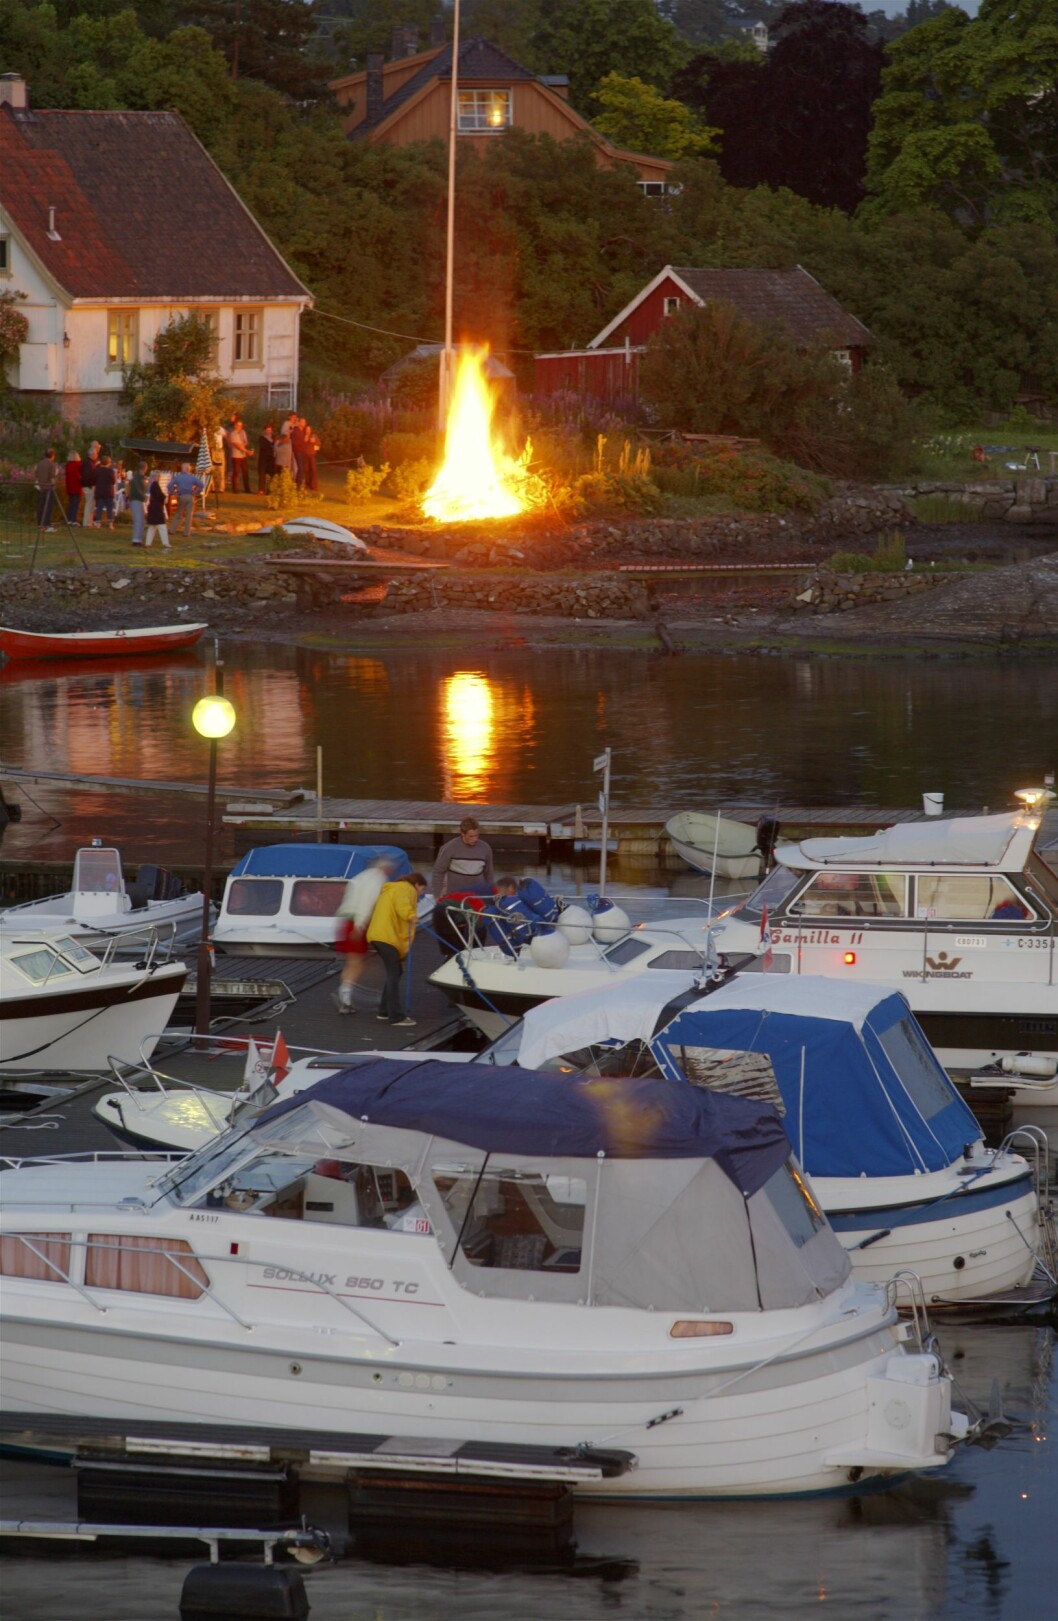 GOD FEIRING: Stort St.Hans bål i strandkanten, mange tilskuere og yrende båtliv. Ormøya, Oslo. Illustrasjonsfoto: © Bjørn Rørslett /NTB-Scanpix/ Samfoto